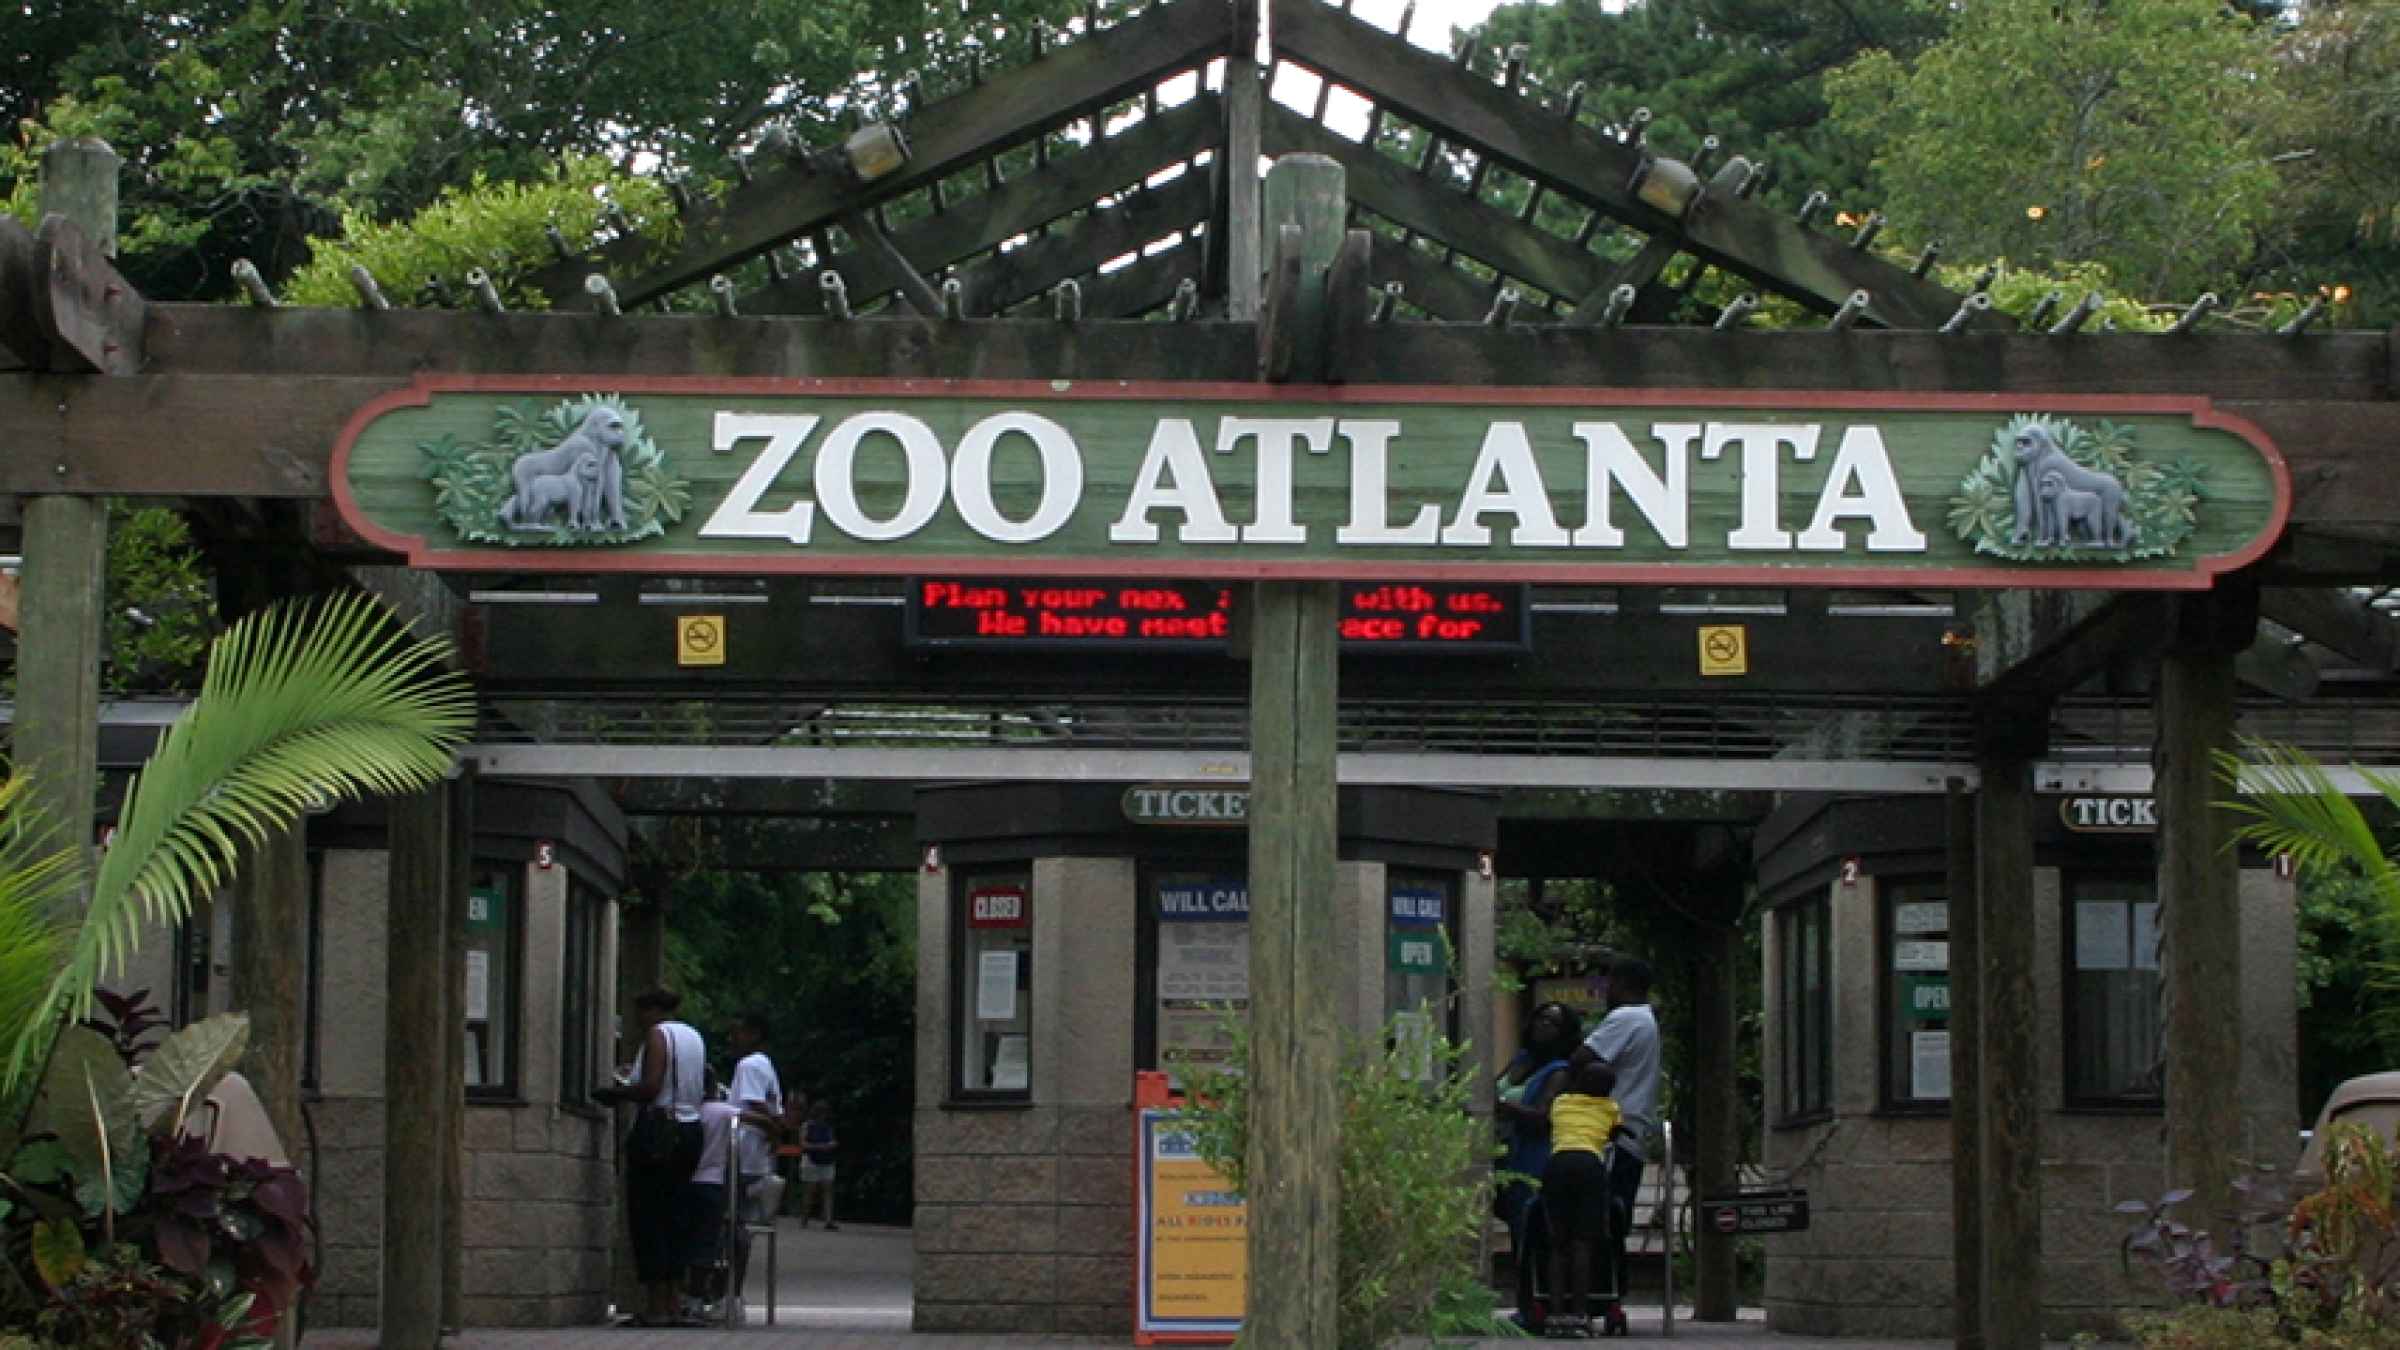 Zoo Atlanta Atlanta tickets comprar ingressos agora GetYourGuide